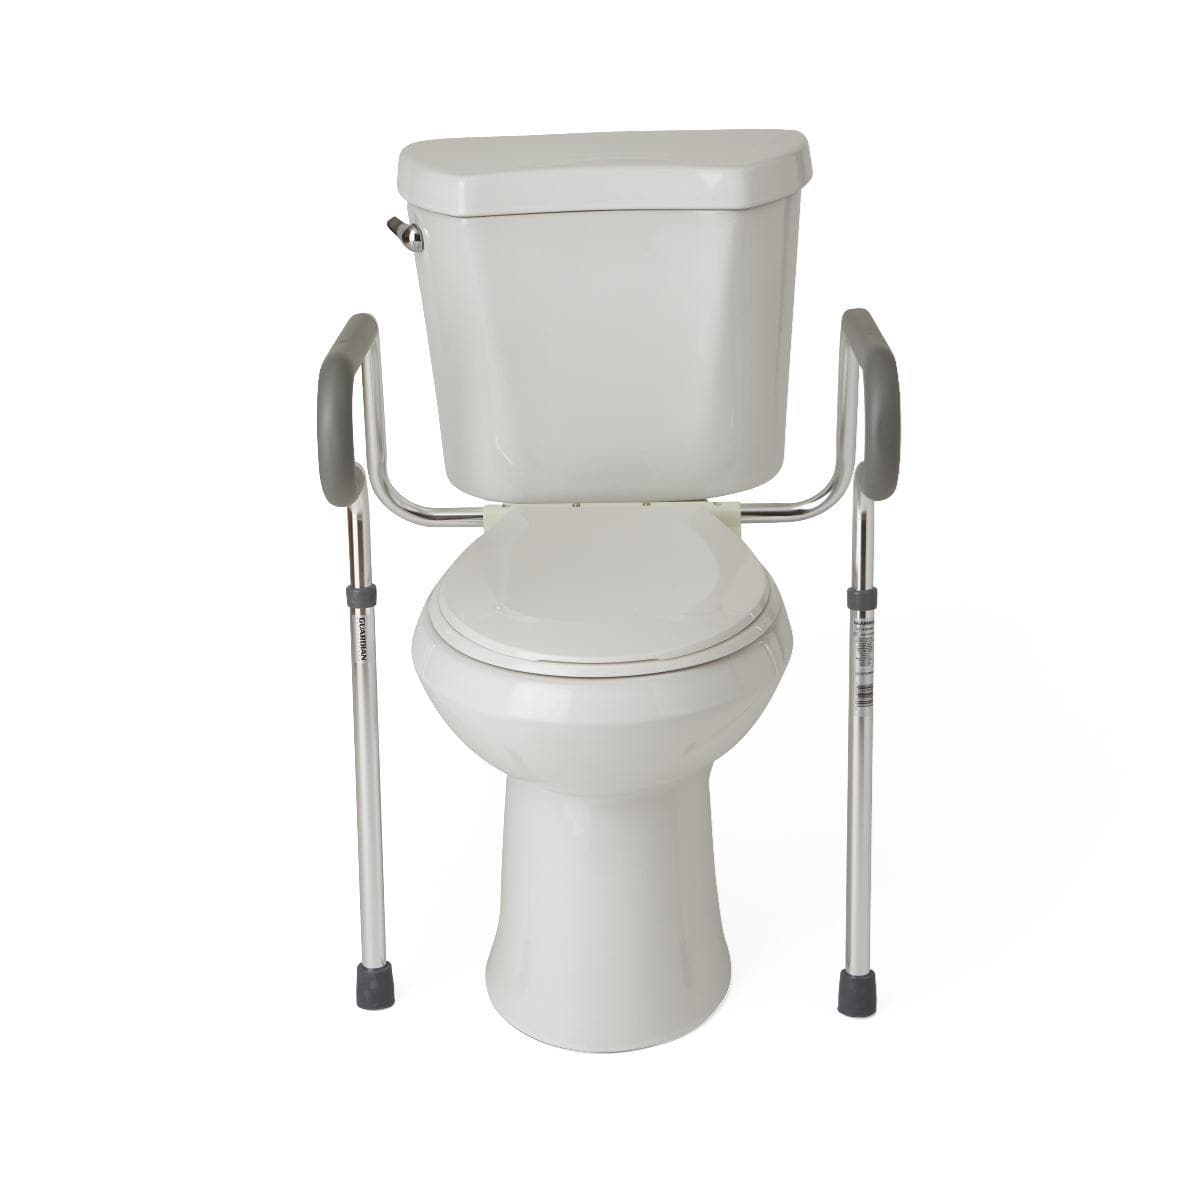 Medline Guardian Toilet Safety Frame - Fall Prevention Toilet Rails - Senior.com Toilet Safety Frames